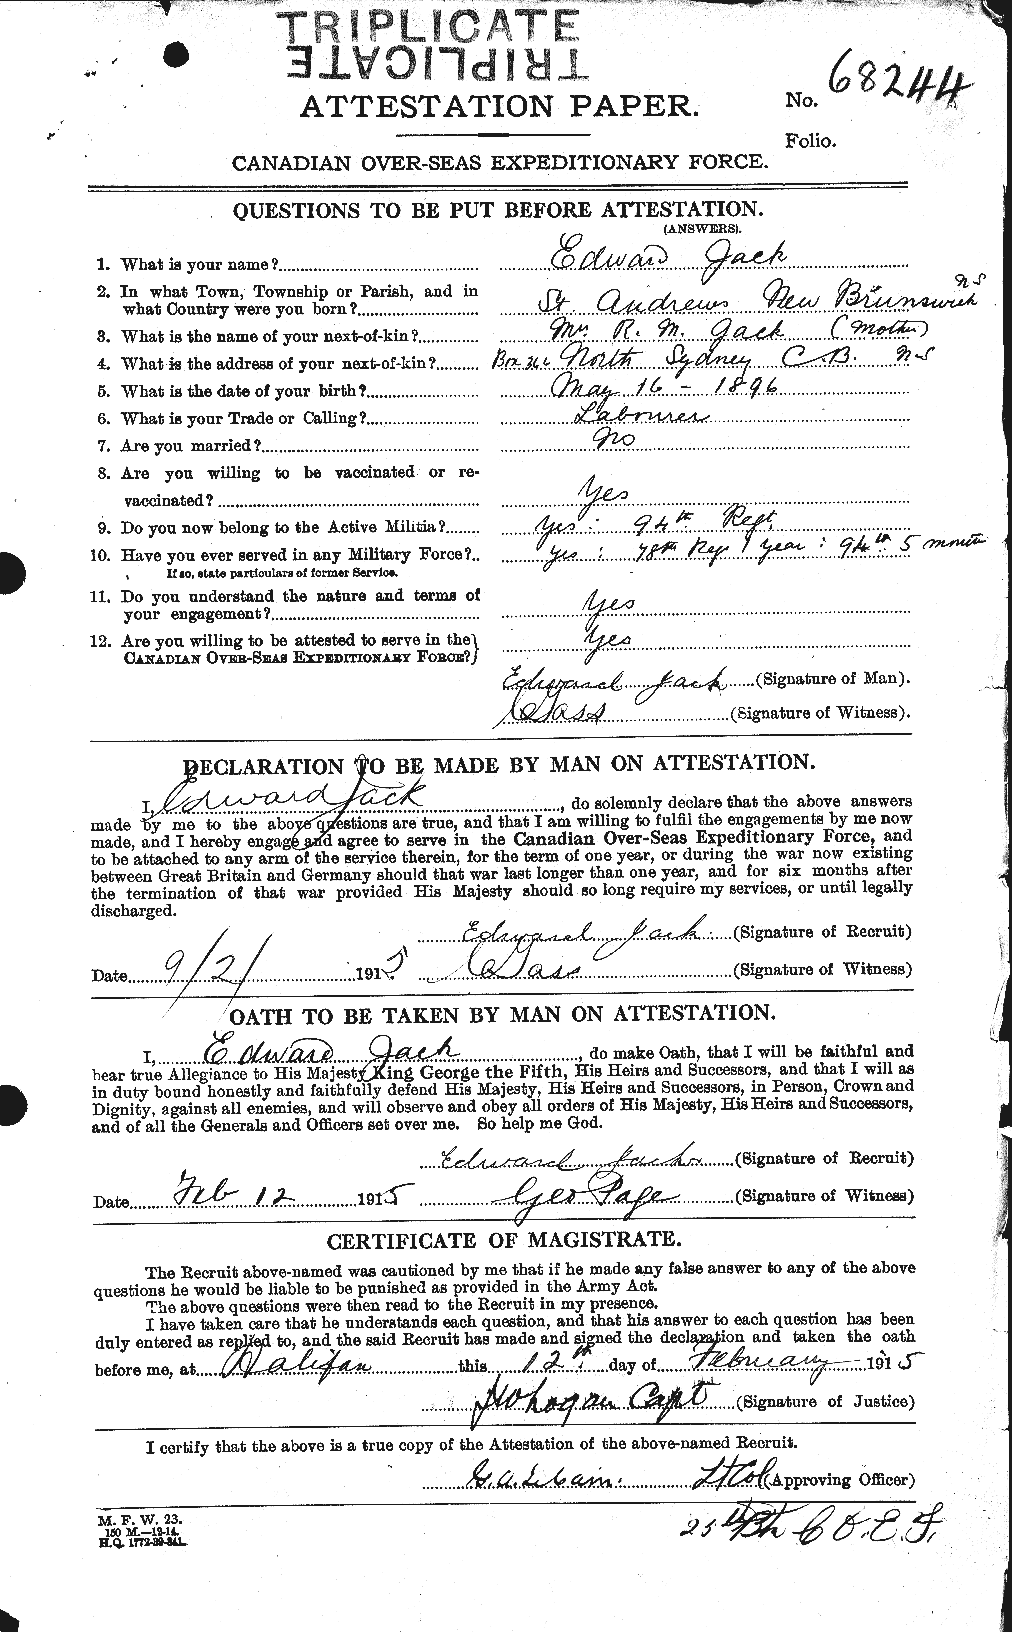 Dossiers du Personnel de la Première Guerre mondiale - CEC 409695a